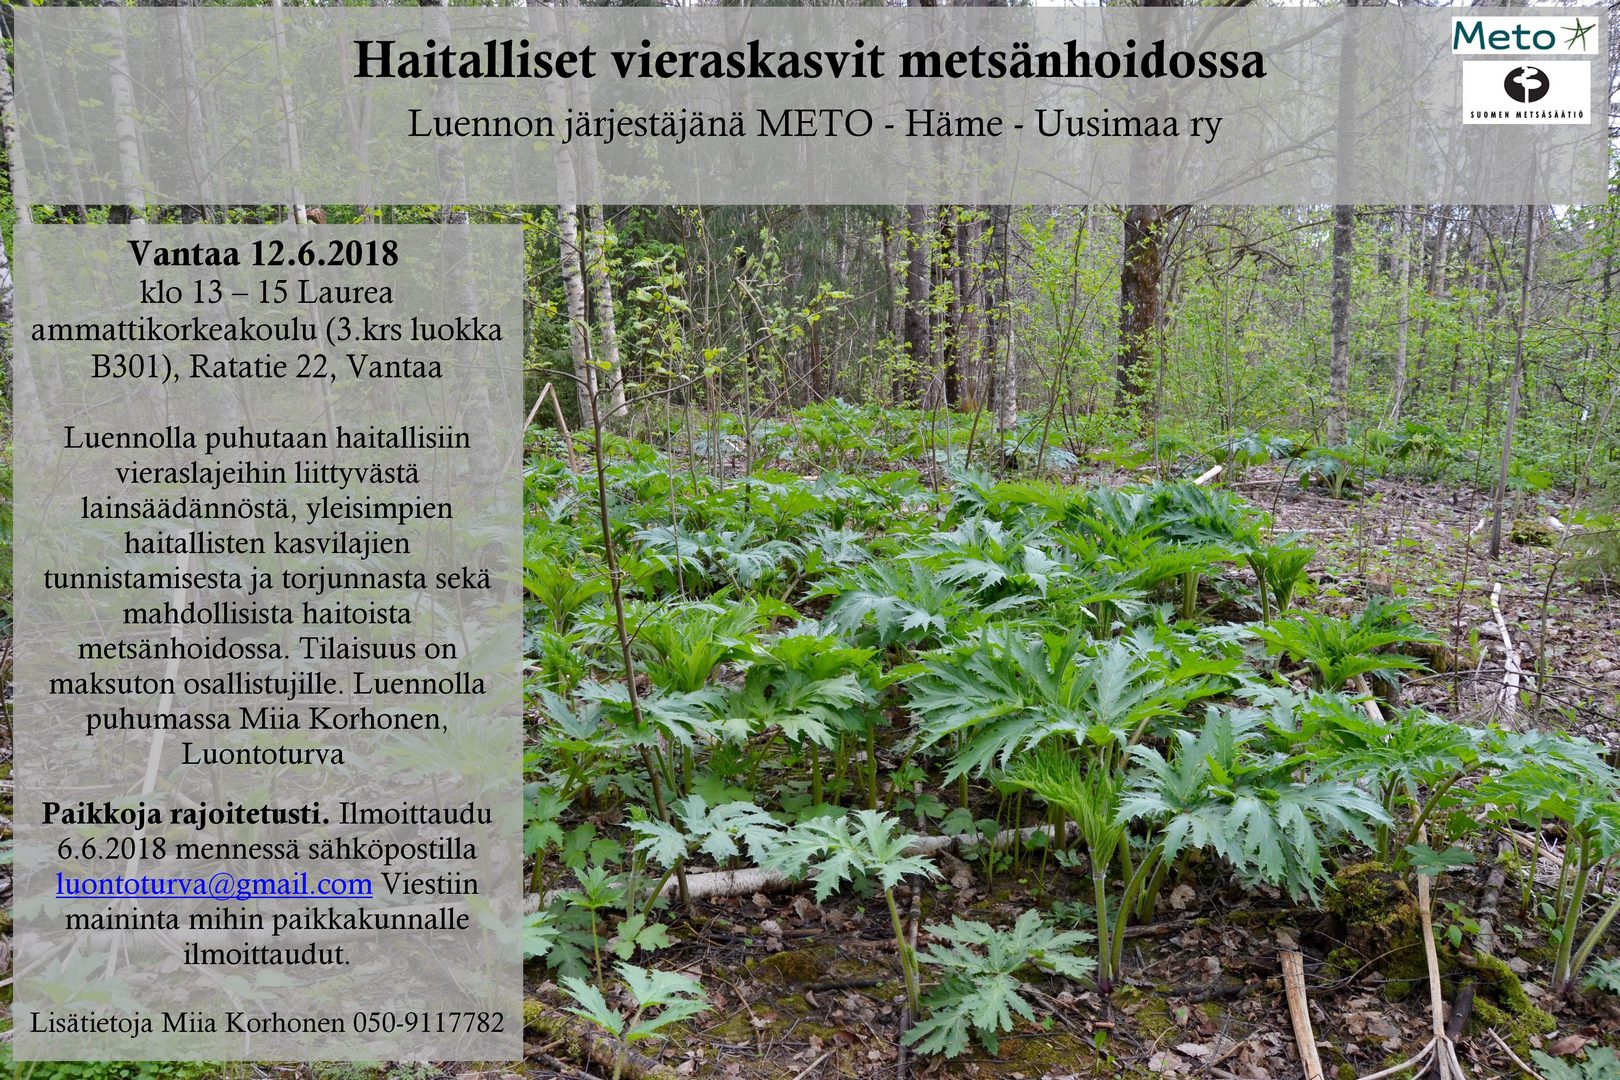 2018_Vantaa_12.6.2018_haitalliset_vieraskasvit_metsanhoidossa_luento_METO_-_Hame-Uusimaa_.JPG